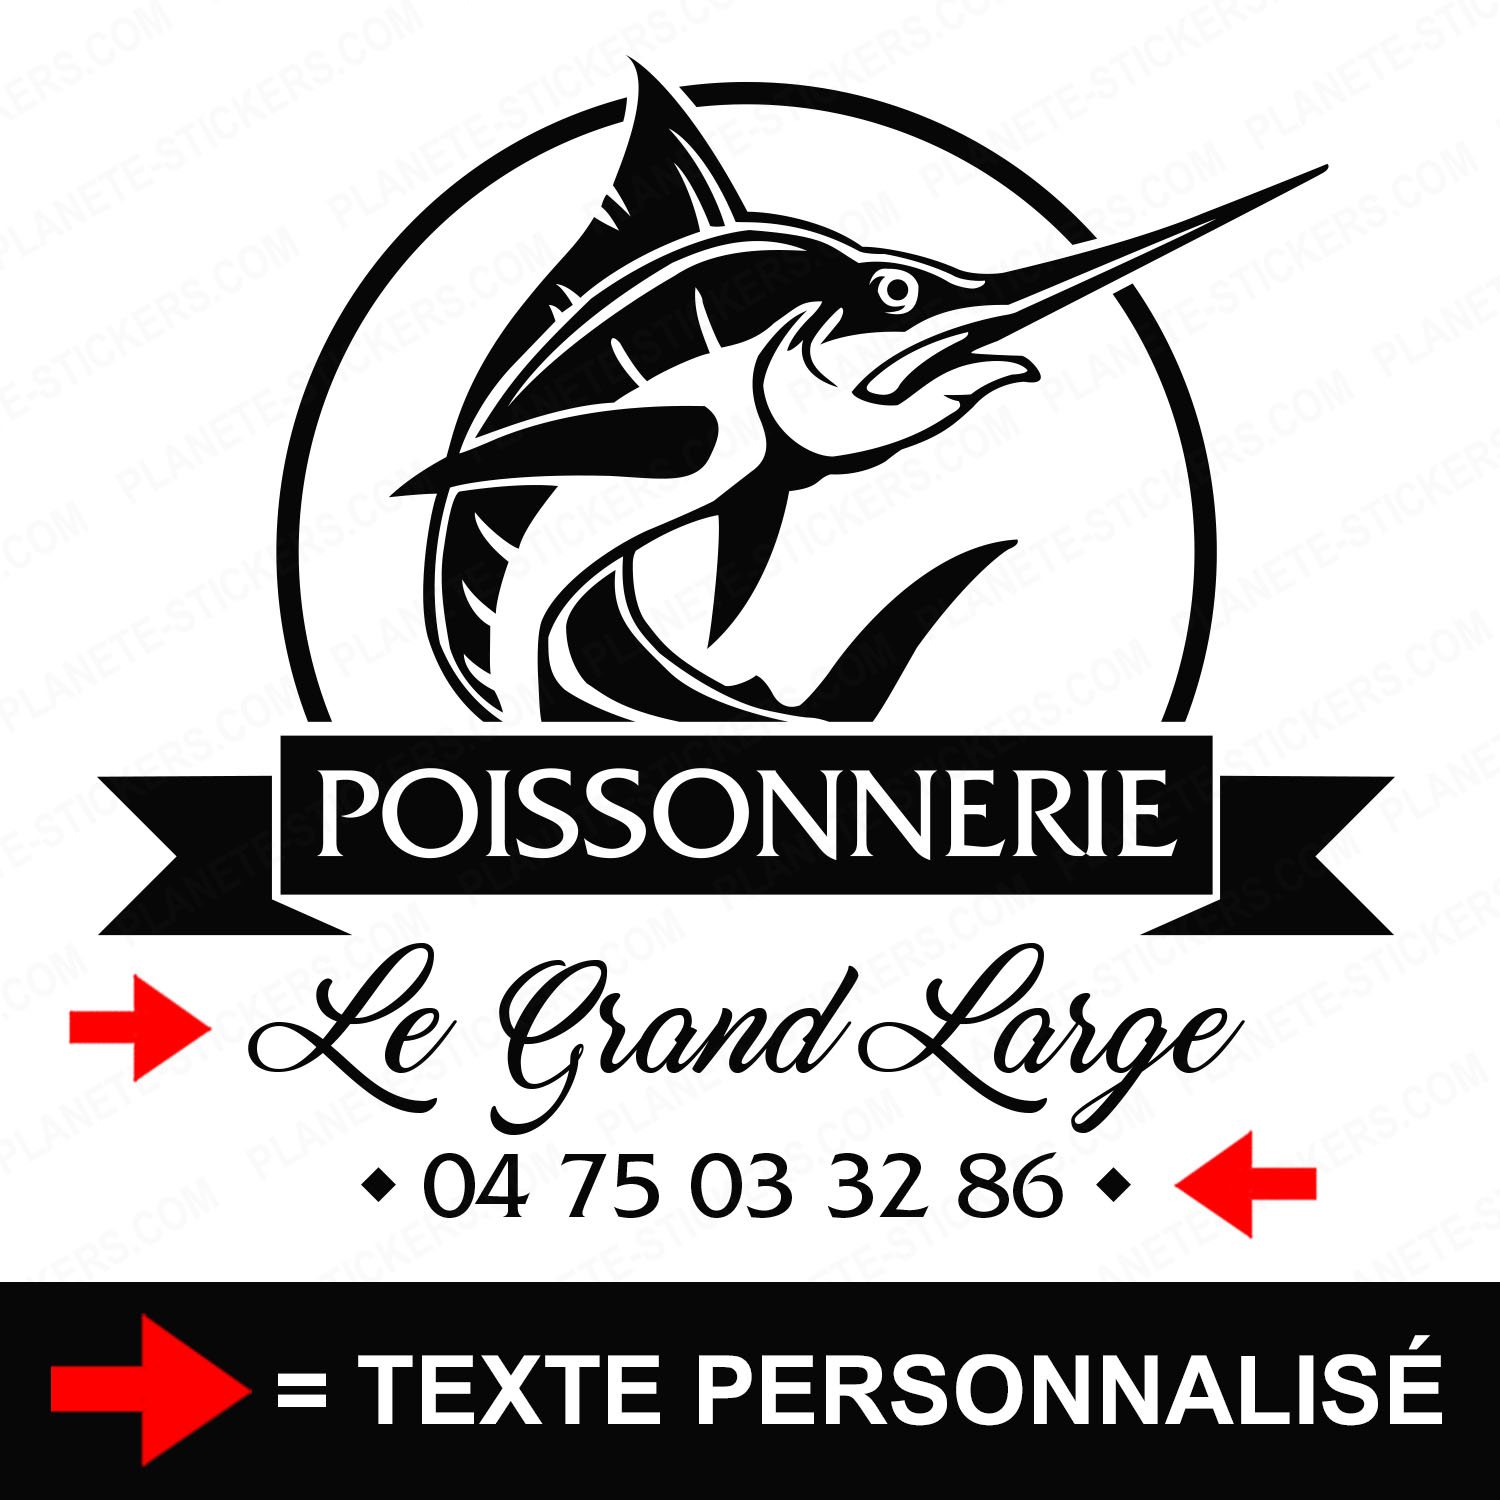 ref1poissonnerievitrine-stickers-poissonnerie-vitrine-sticker-personnalisé-autocollant-poissonnier-pro-vitre-poisson-professionnel-logo-espadon-2